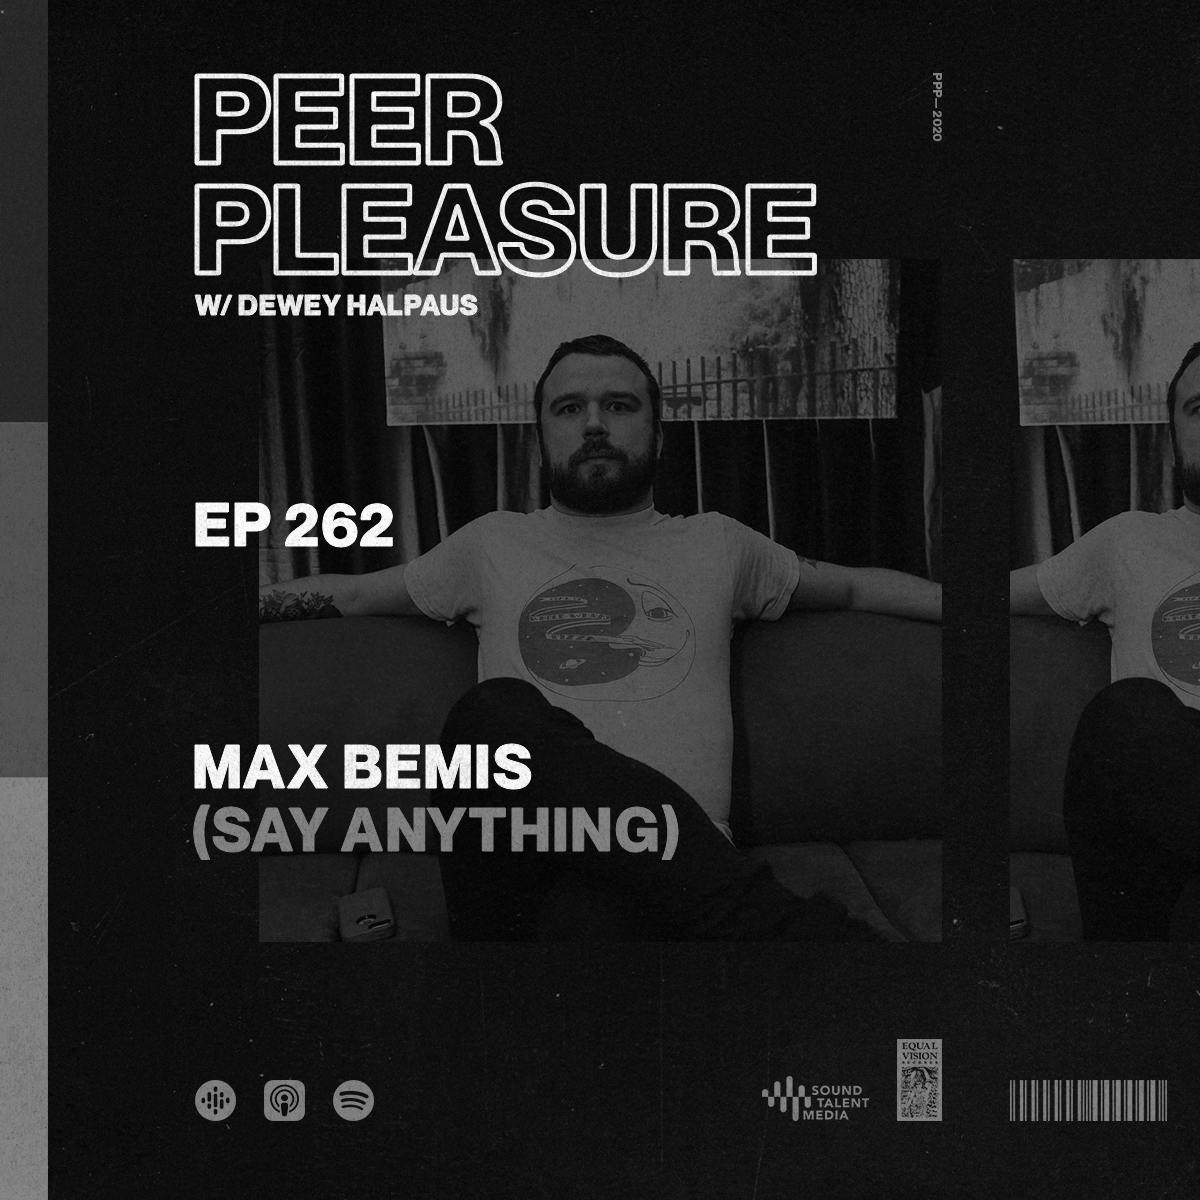 Max Bemis (Say Anything)